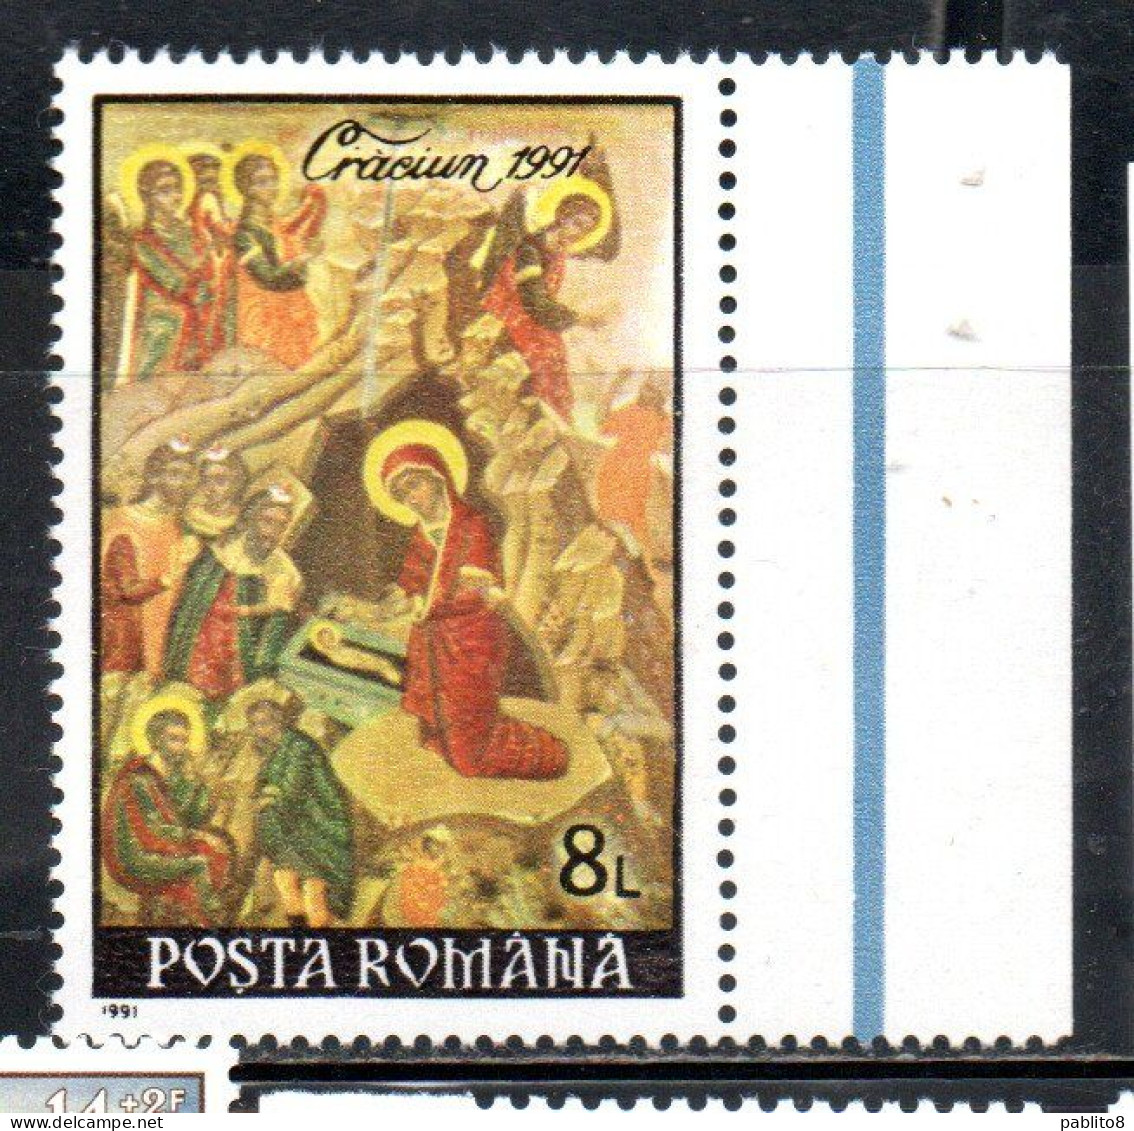 ROMANIA 1991 CHRISTMAS NOEL WEIHNACHTEN NAVIDAD 8L MNH - Nuovi